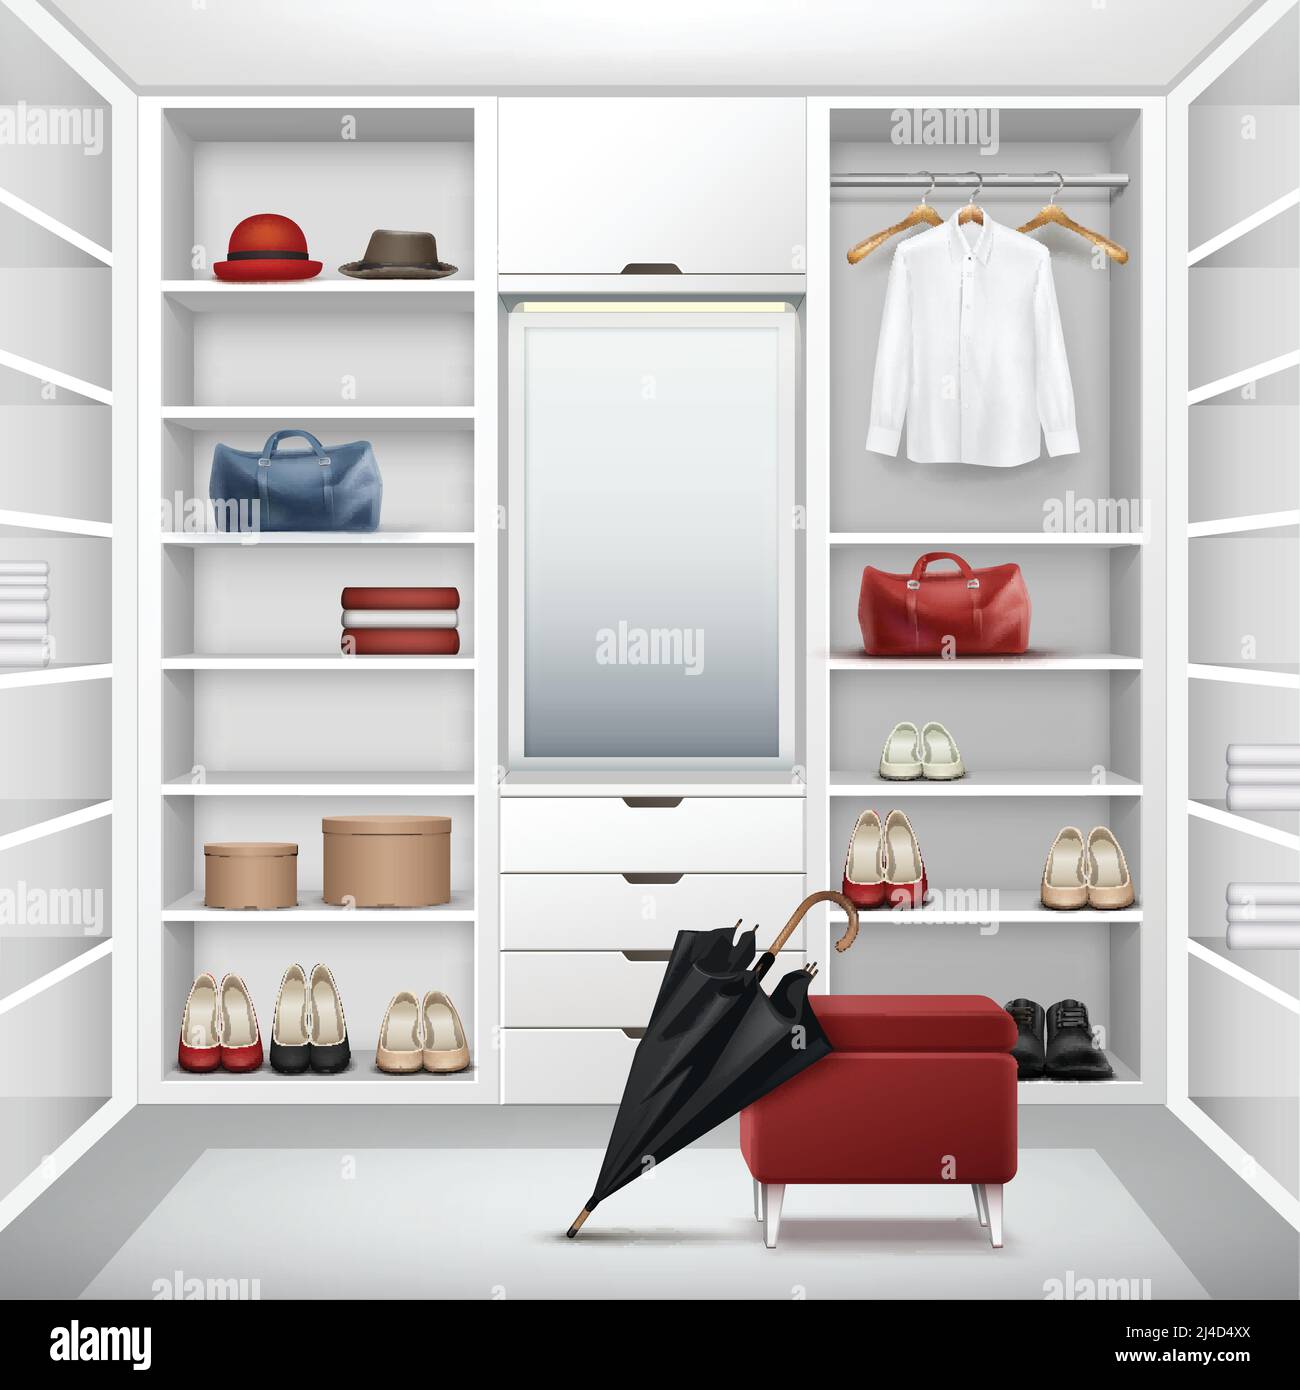 Vector weiß leer Garderobe Schrank mit Boxen, Spiegel, roter Puff, Hemd, Hüte, Taschen, Schuhe und schwarzer Regenschirm Vorderansicht Stock Vektor